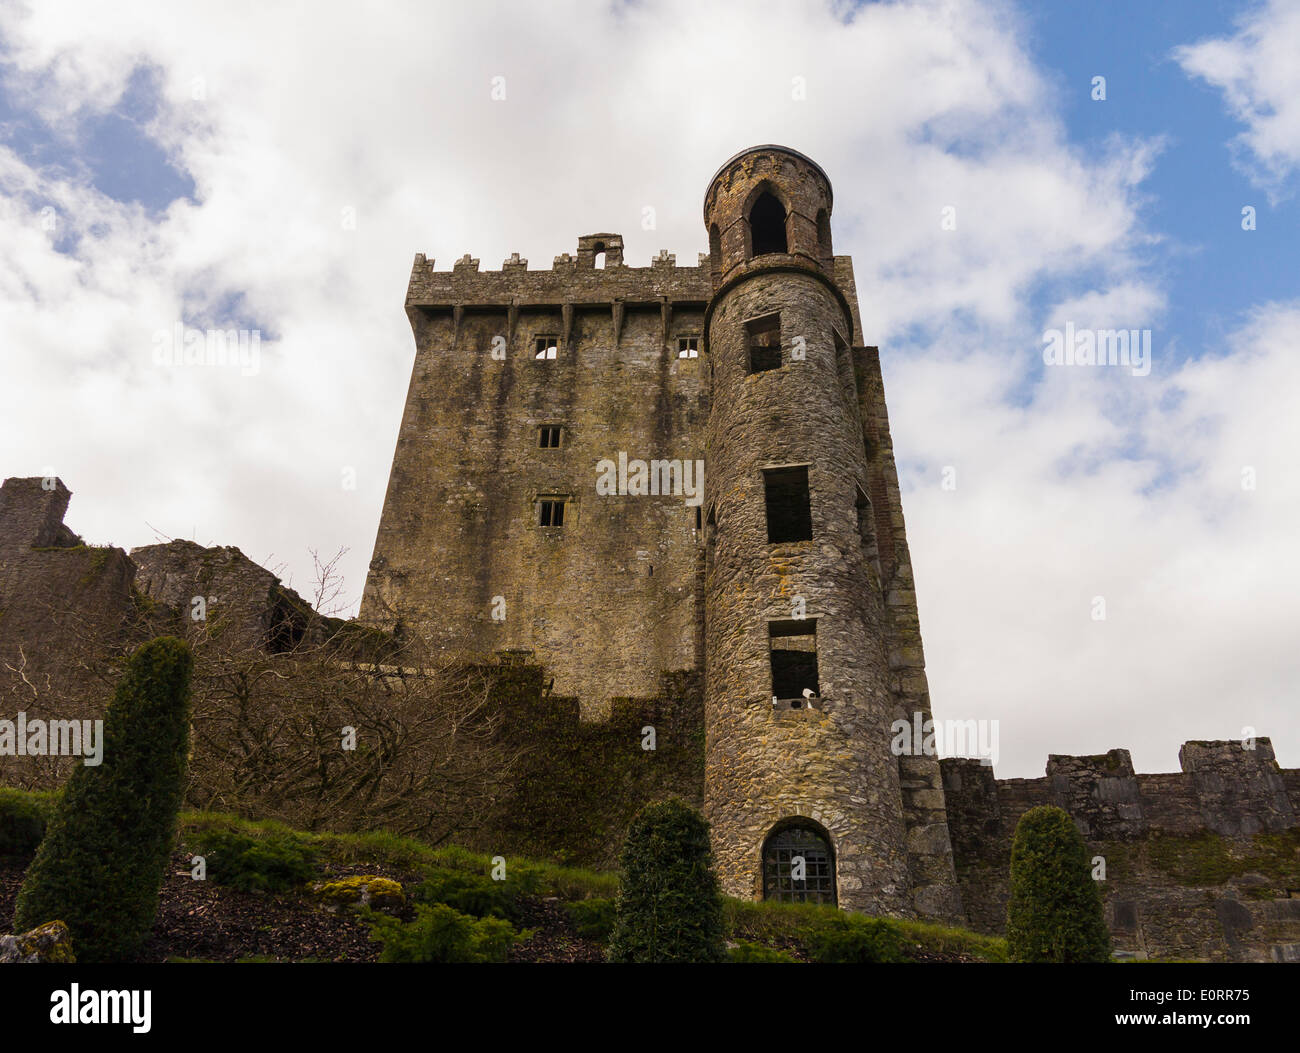 Le château de Blarney dans le comté de Cork, Irlande - vue de la vieille tour Banque D'Images